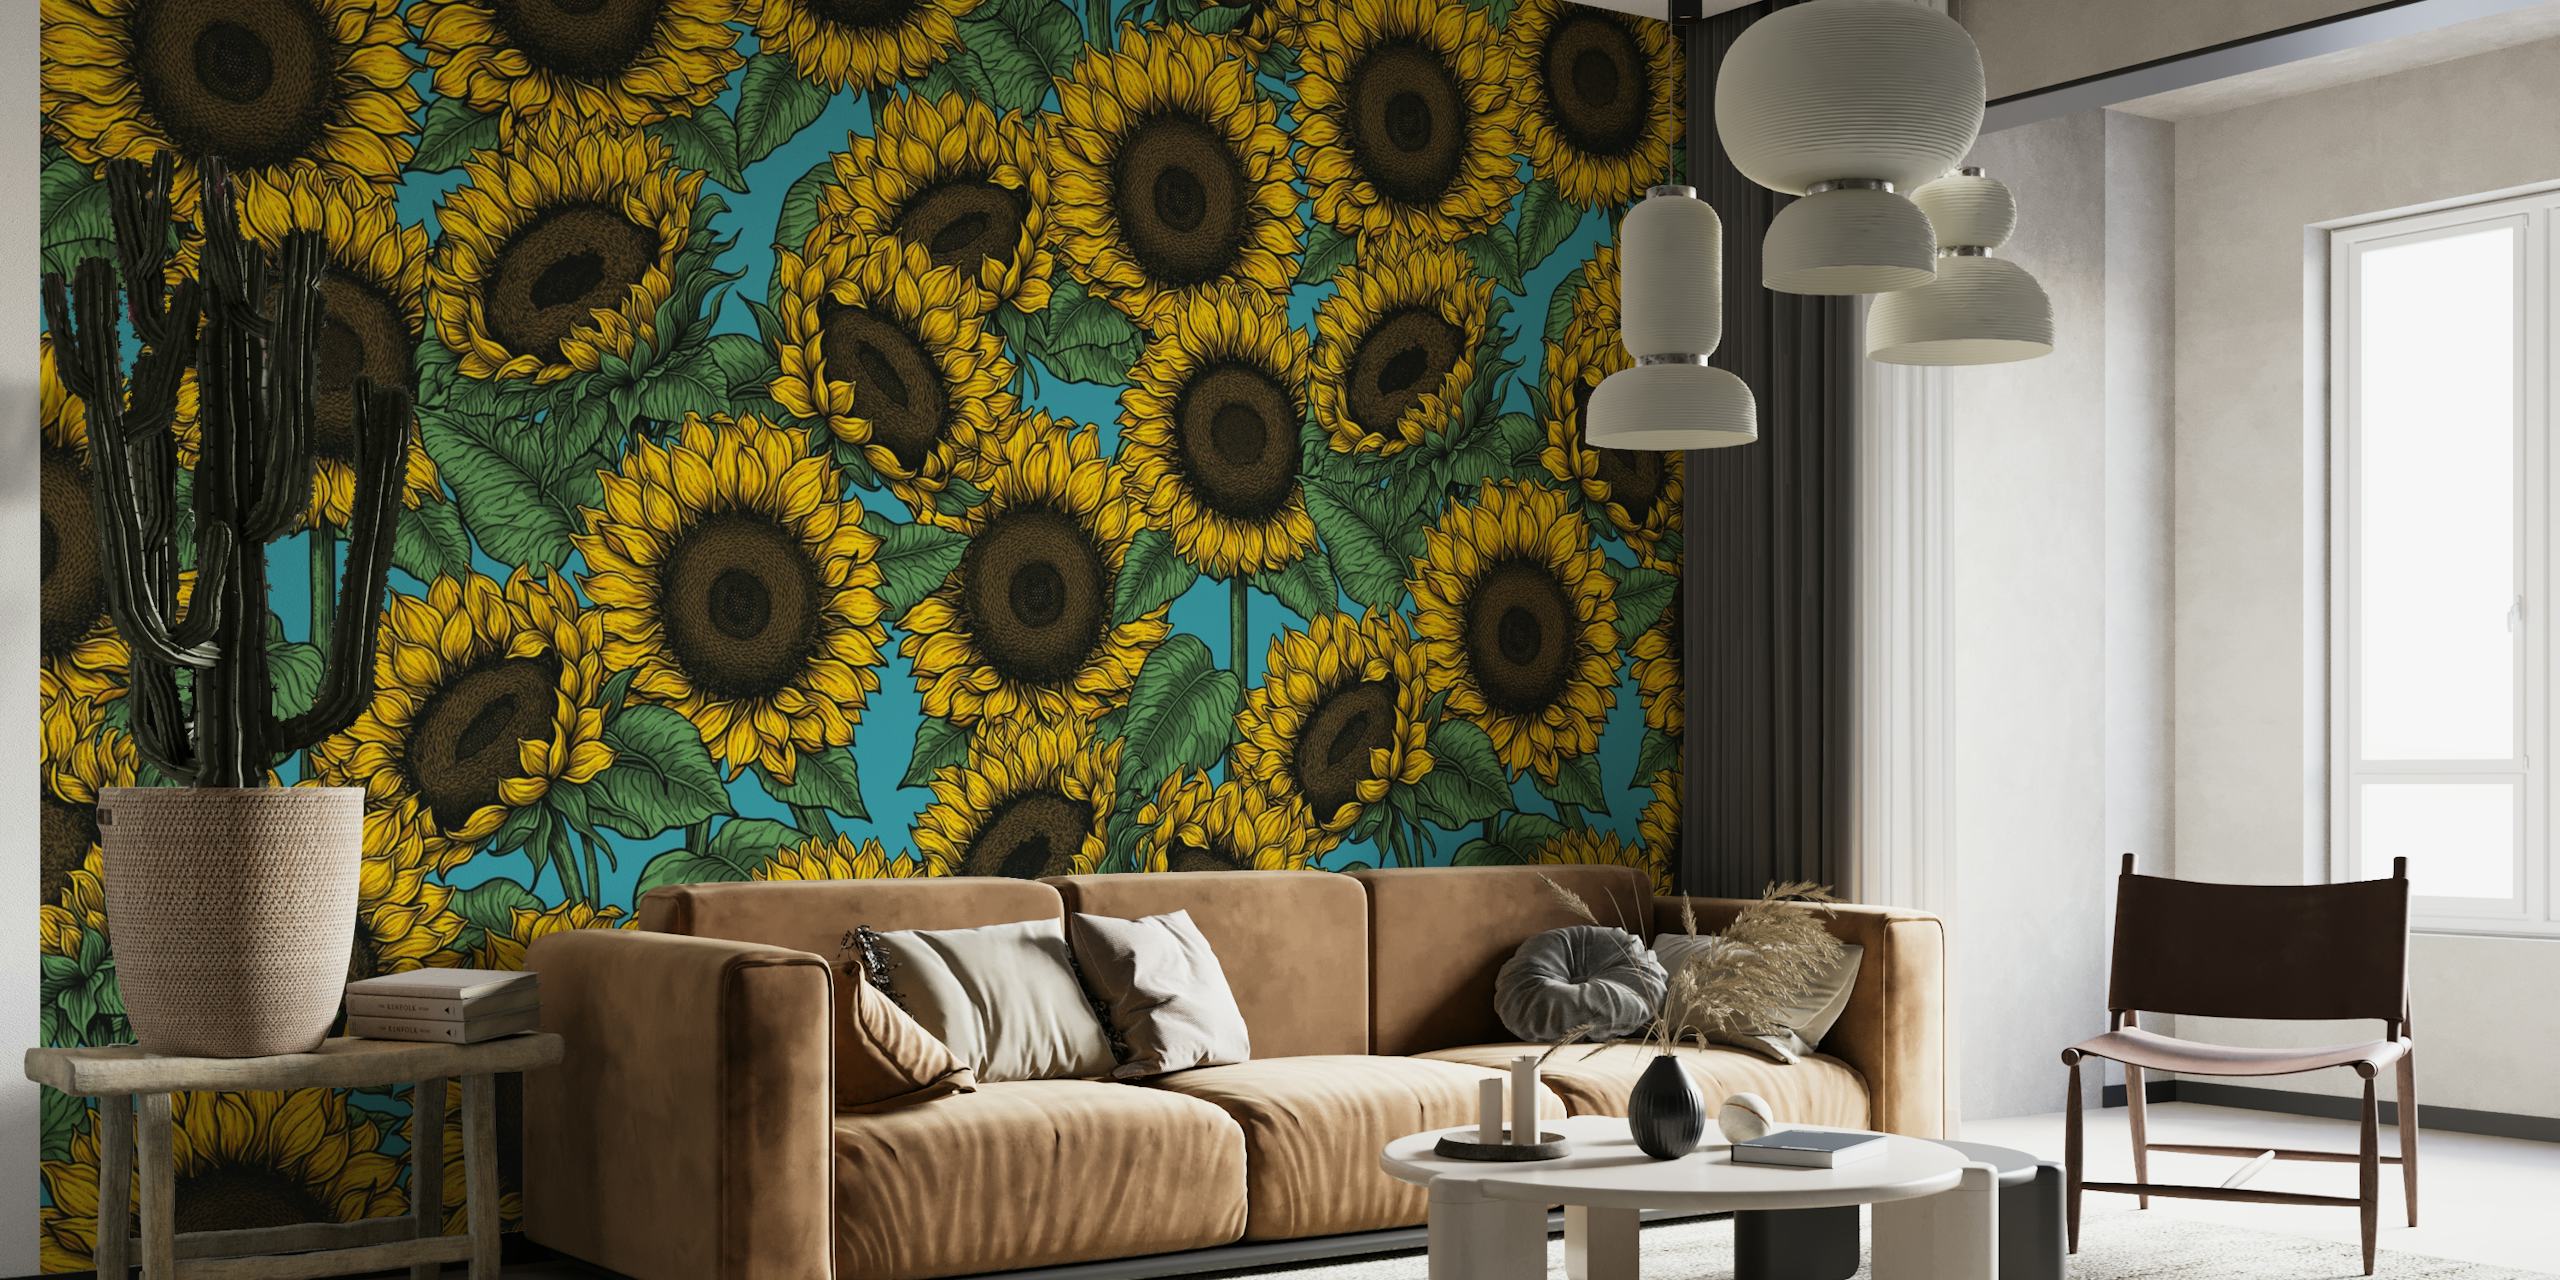 Peinture murale de tournesol vibrante avec un fond riche et contrasté, parfaite pour ajouter une touche florale à n'importe quelle pièce.